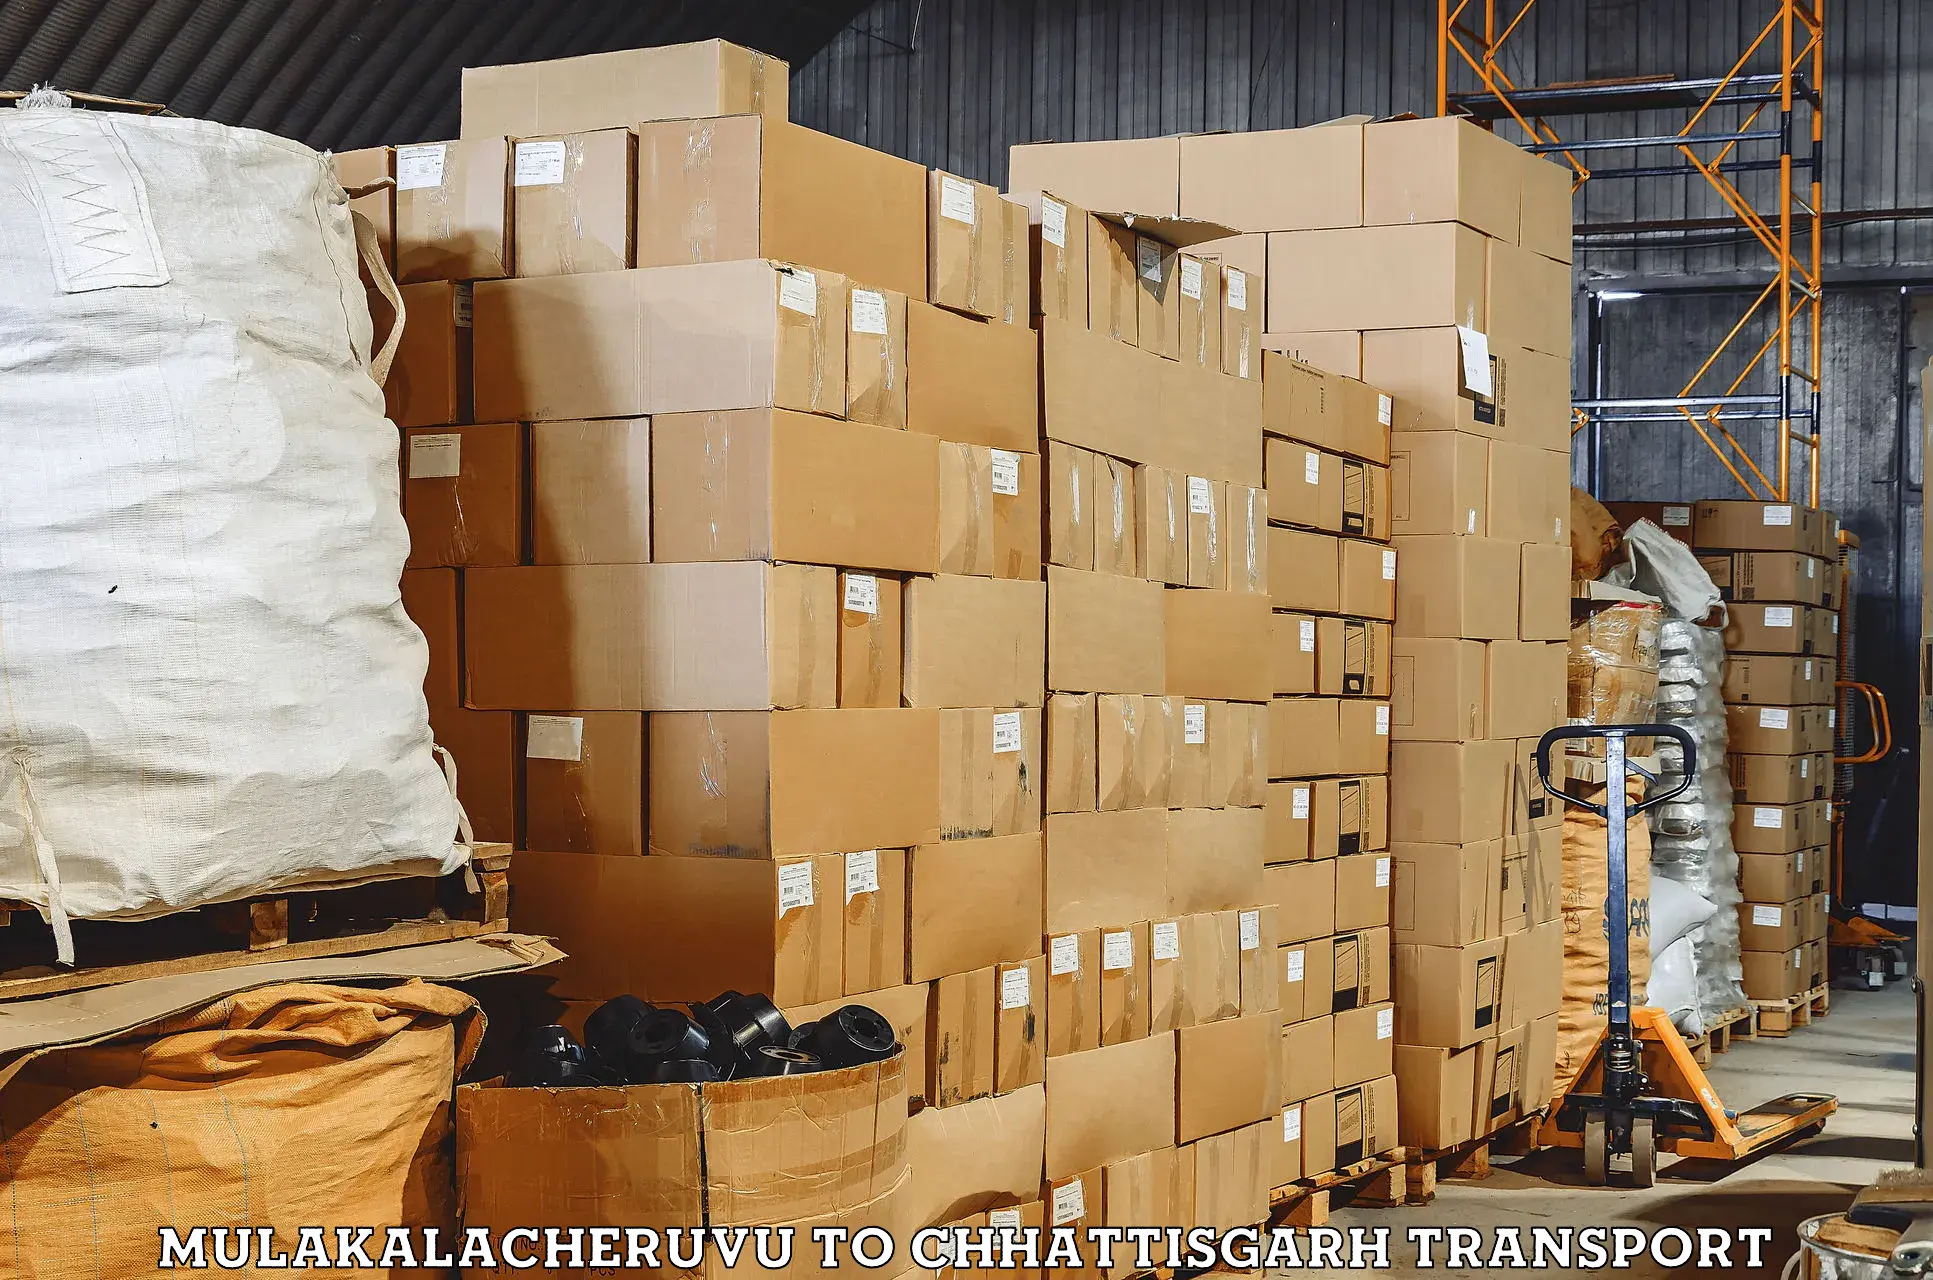 Air freight transport services in Mulakalacheruvu to Dharamjaigarh